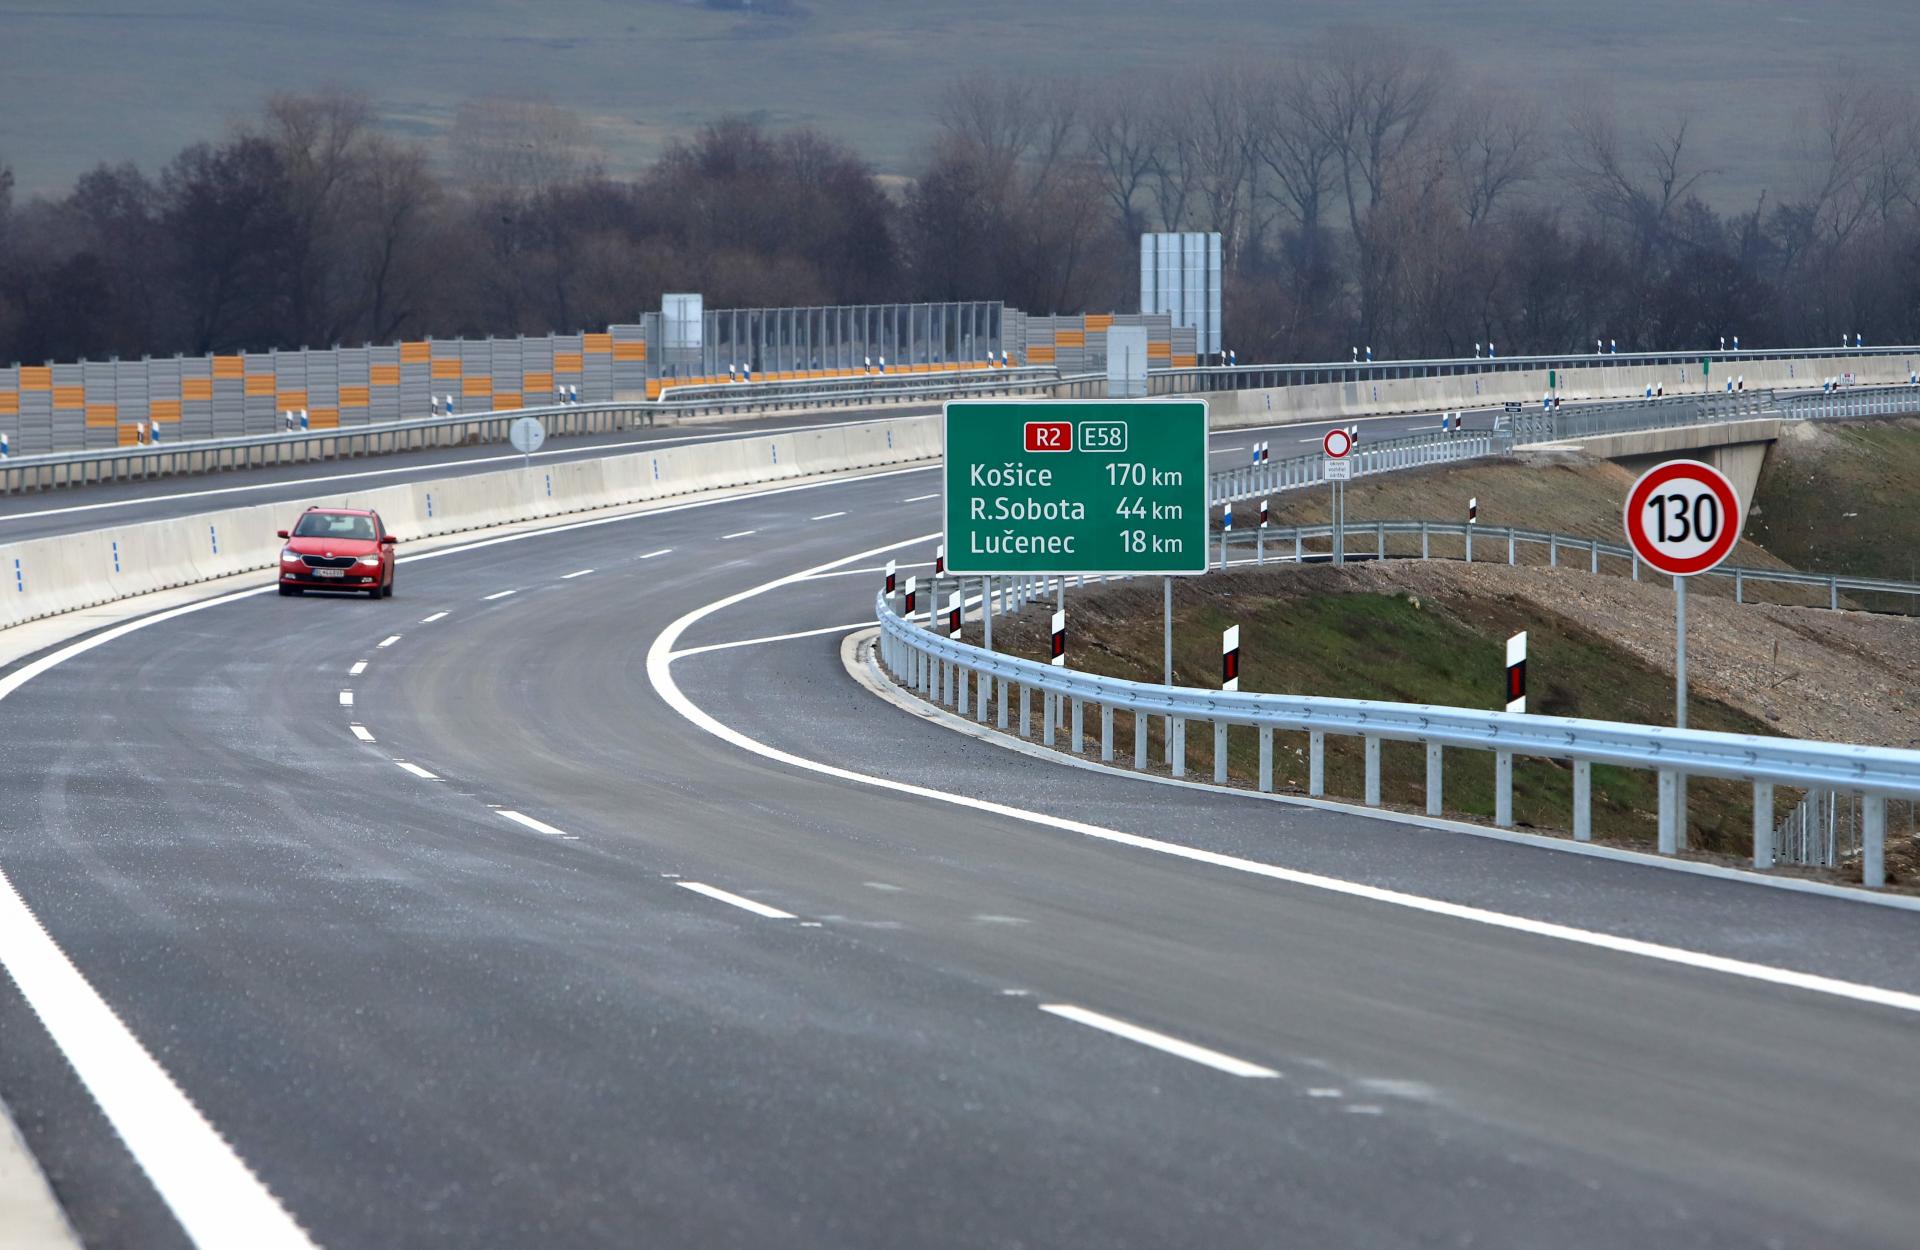 Analitycy ostrzegają, że druga najdroższa autostrada na Słowacji powinna być bezpłatna, inaczej może się zawalić